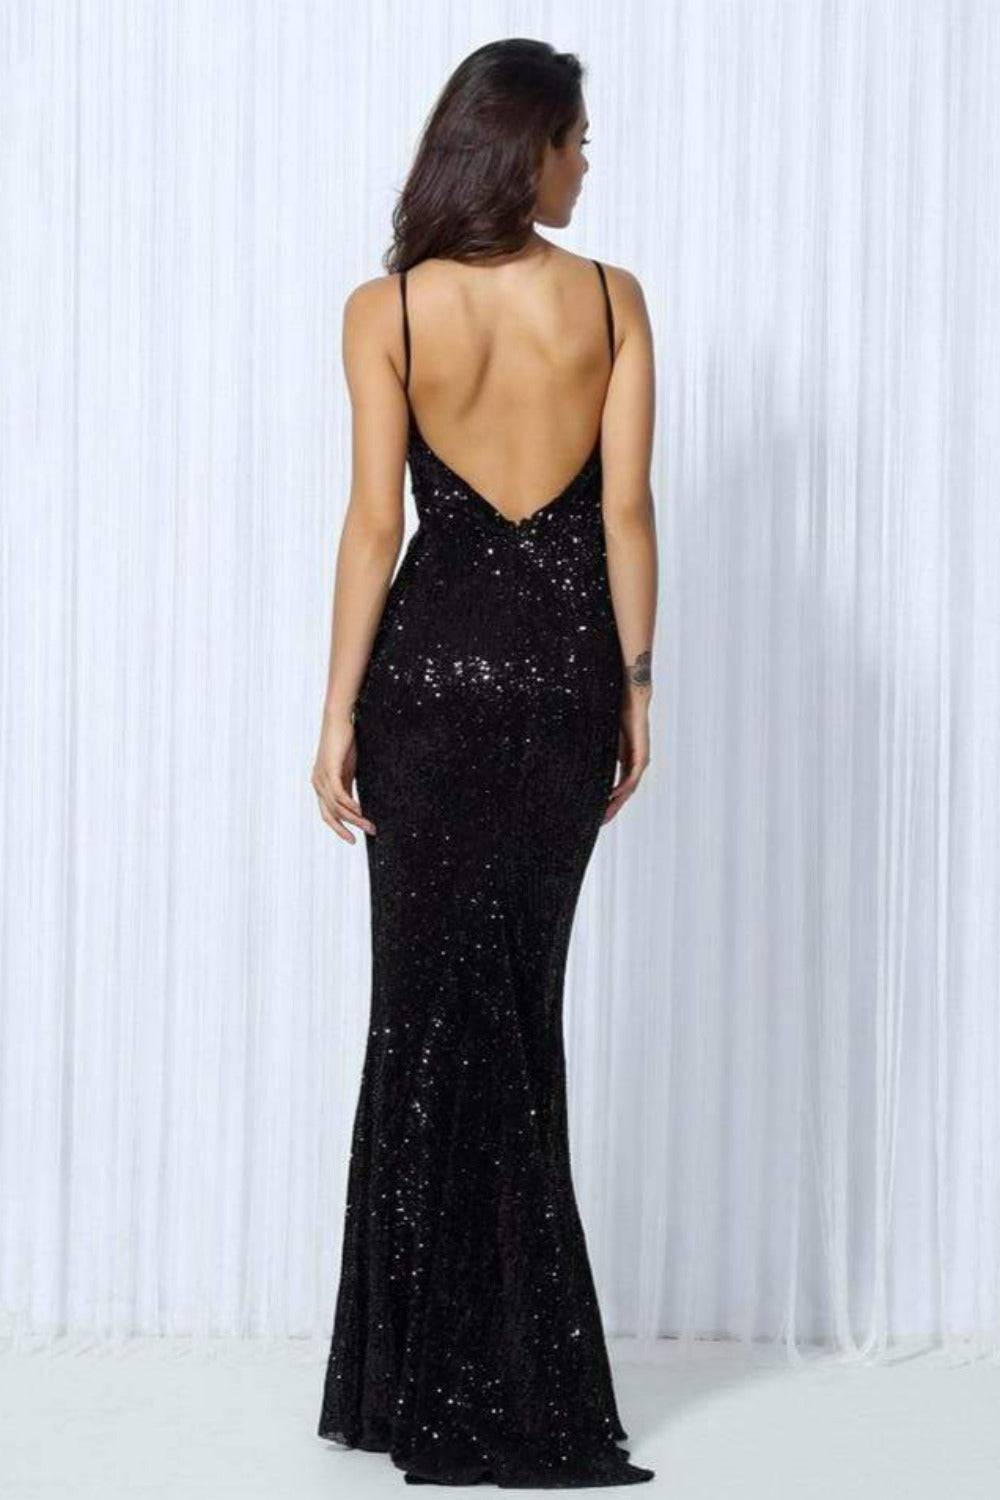 Sequin Backless Black Maxi Dress - TGC Boutique - Maxi Dress